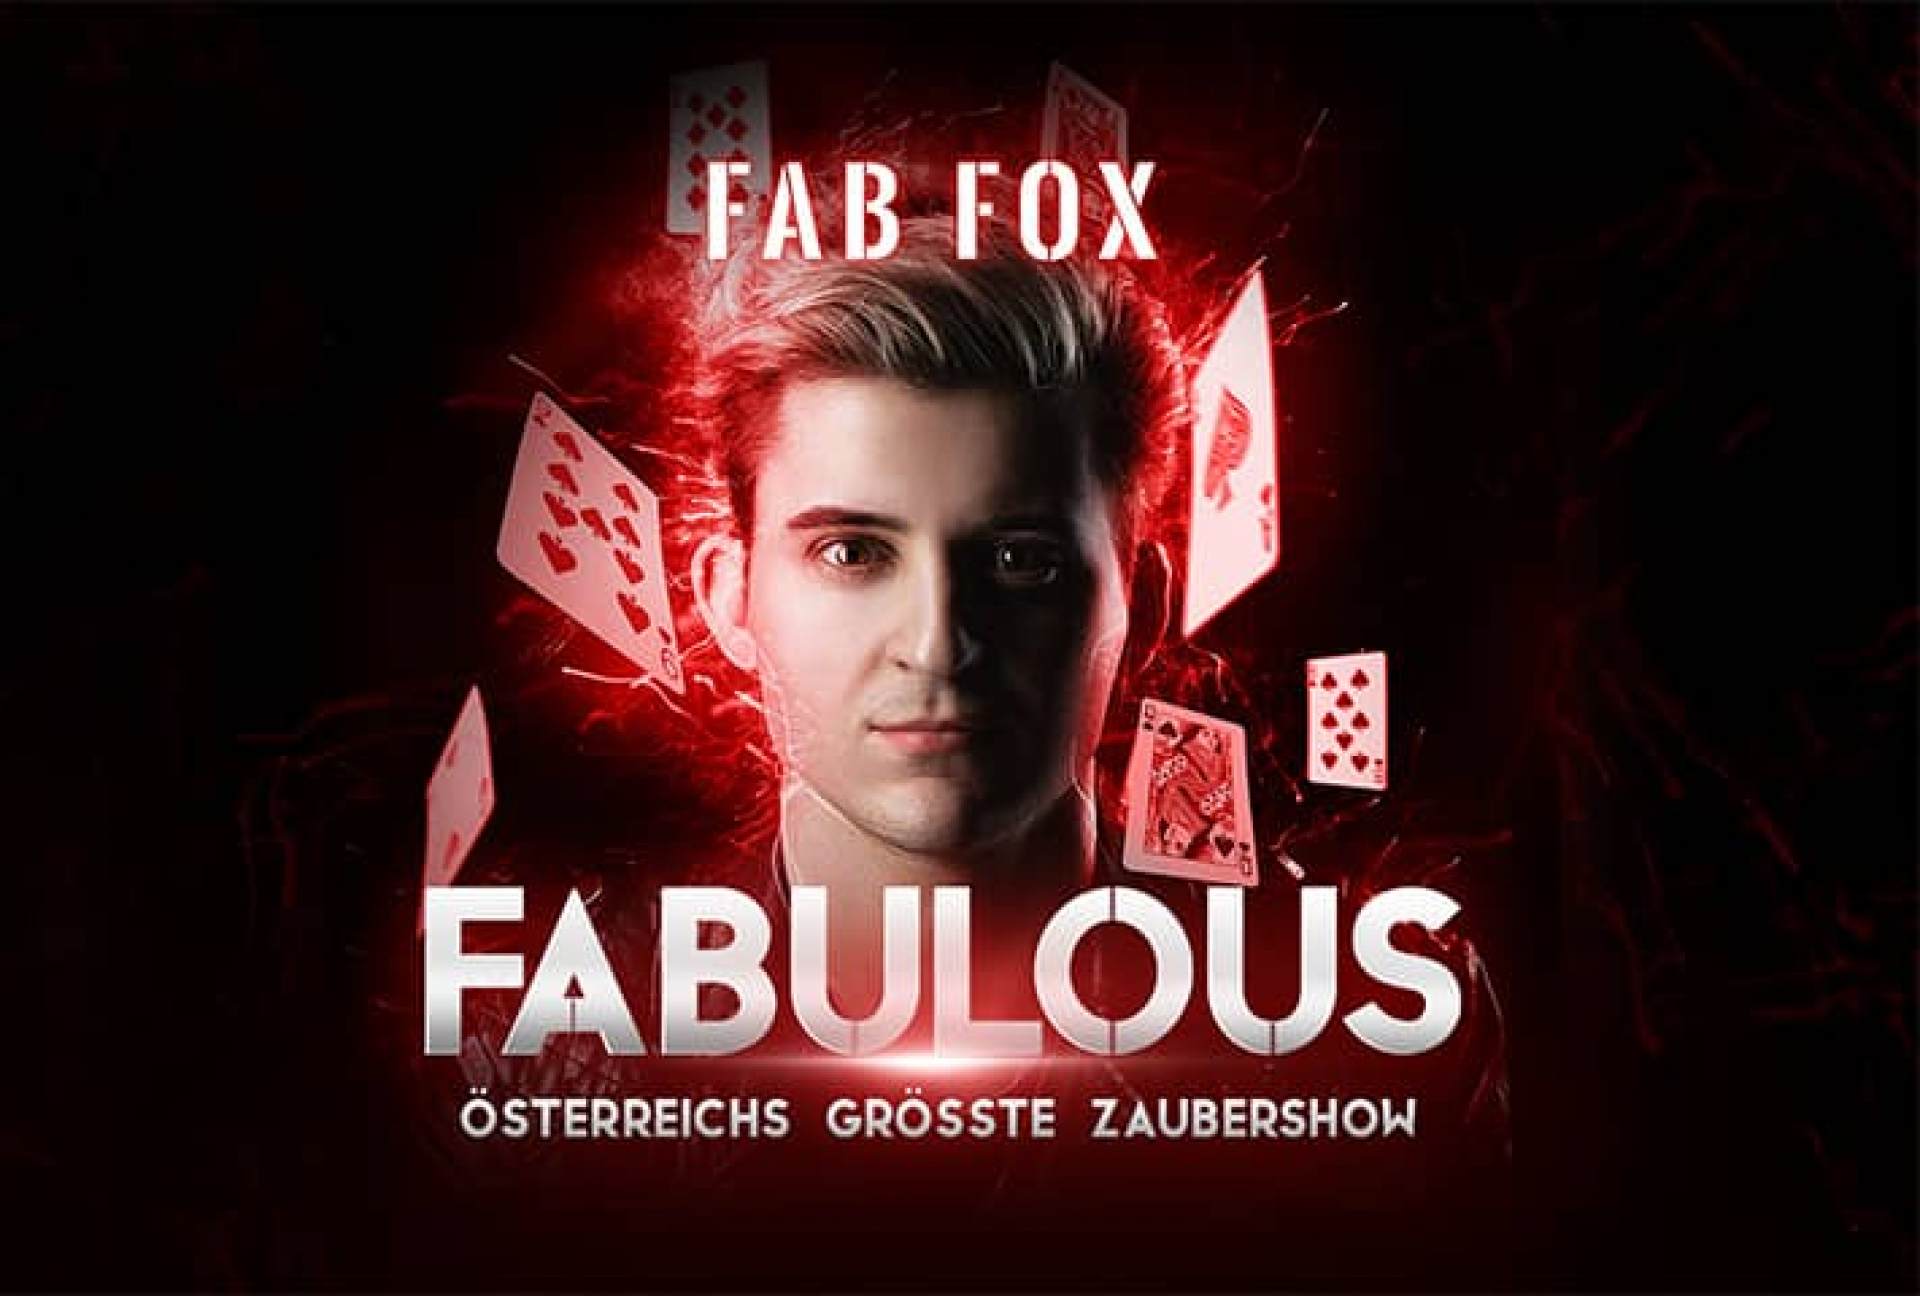 Fab Fox Fabulous